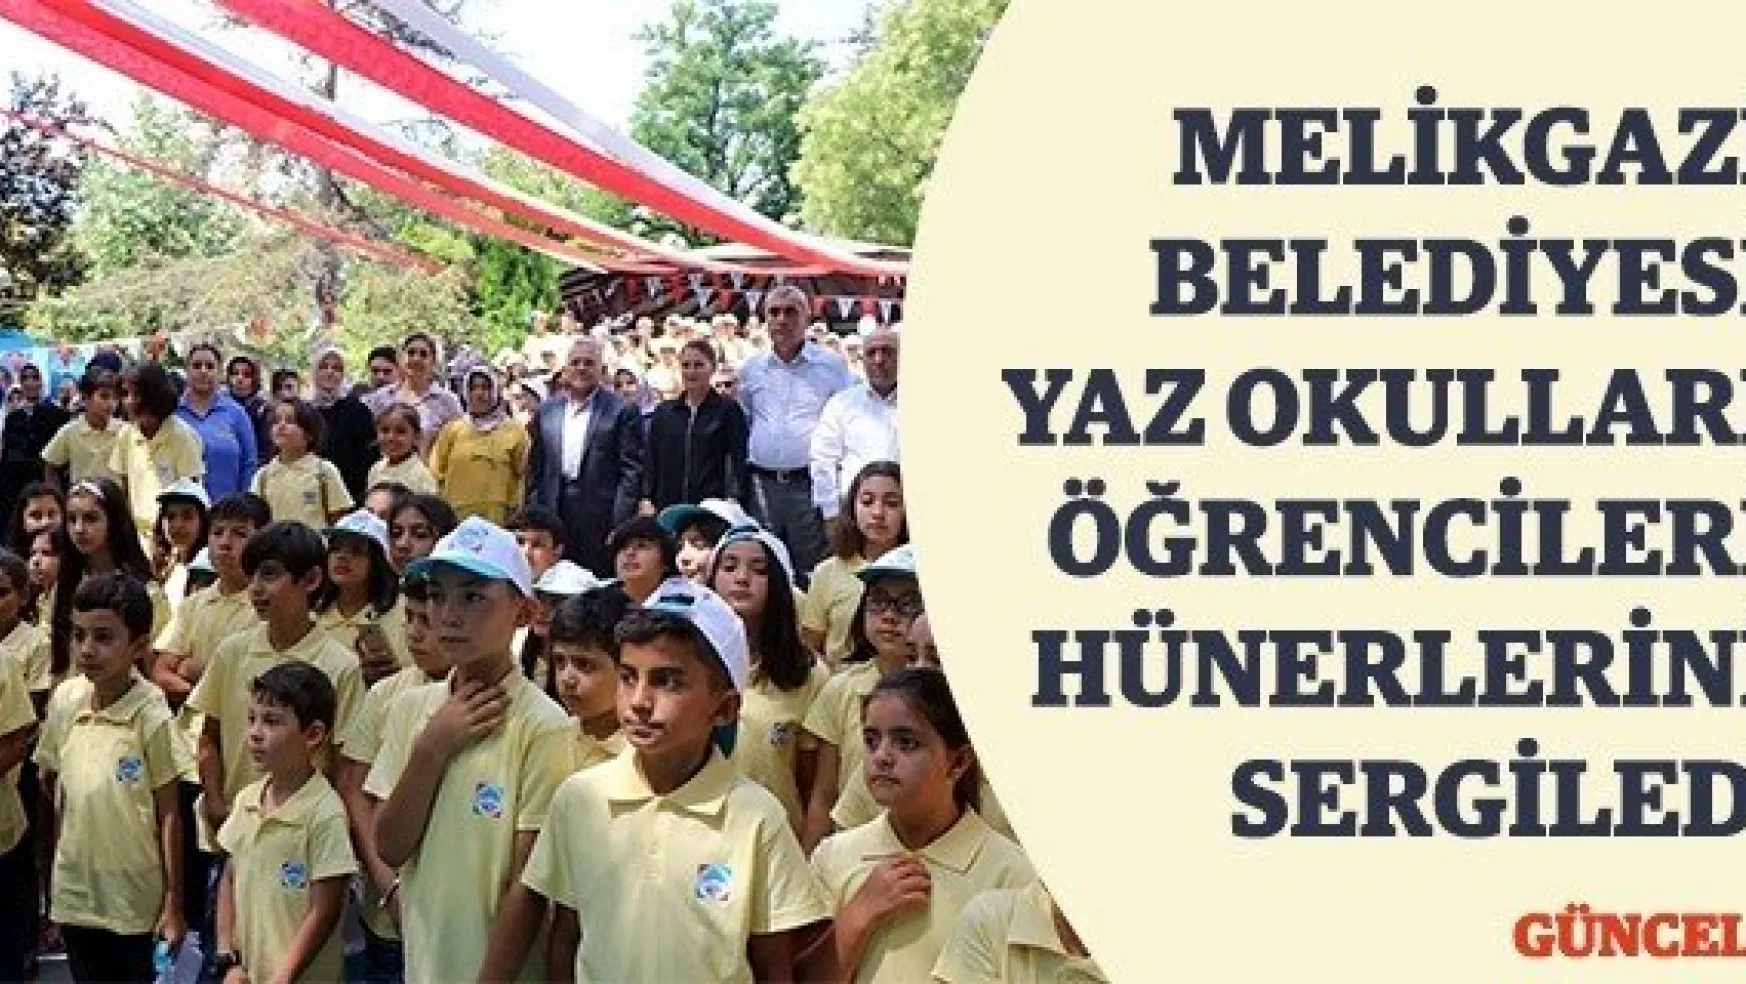 Melikgazi Belediyesi yaz okulları öğrencileri hünerlerini sergiledi